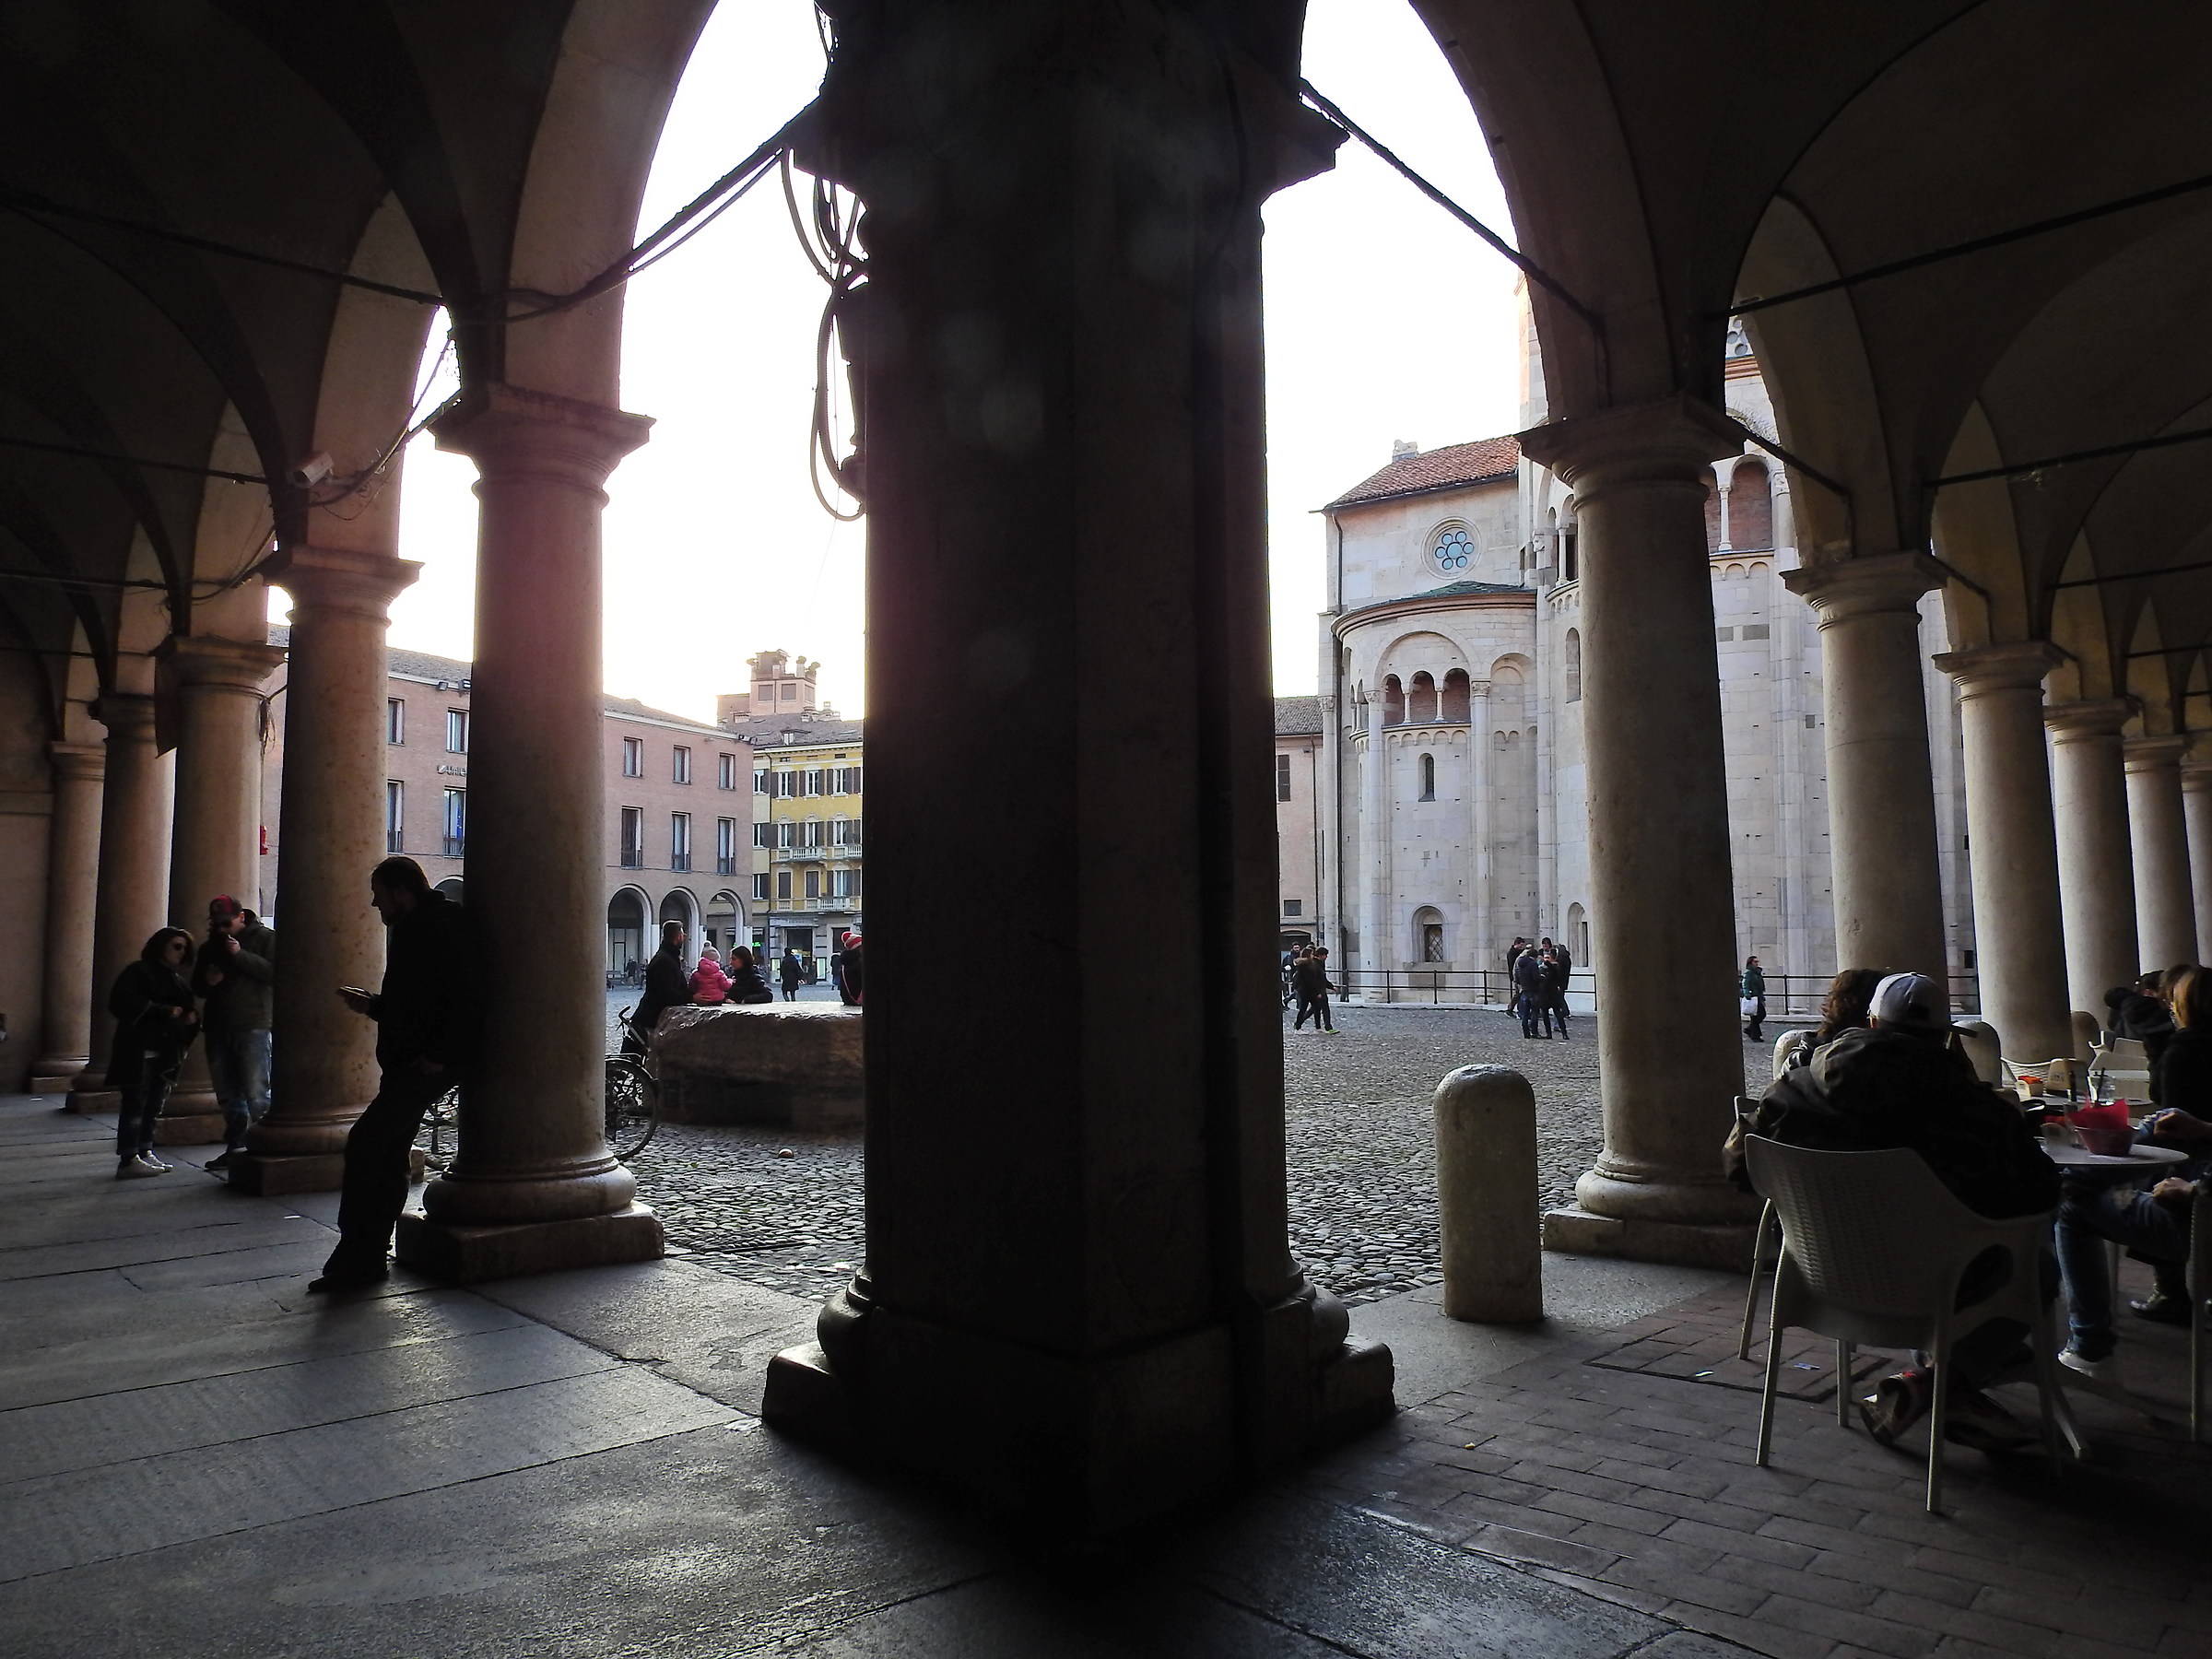 Under the arcades of Piazza Grande 2...